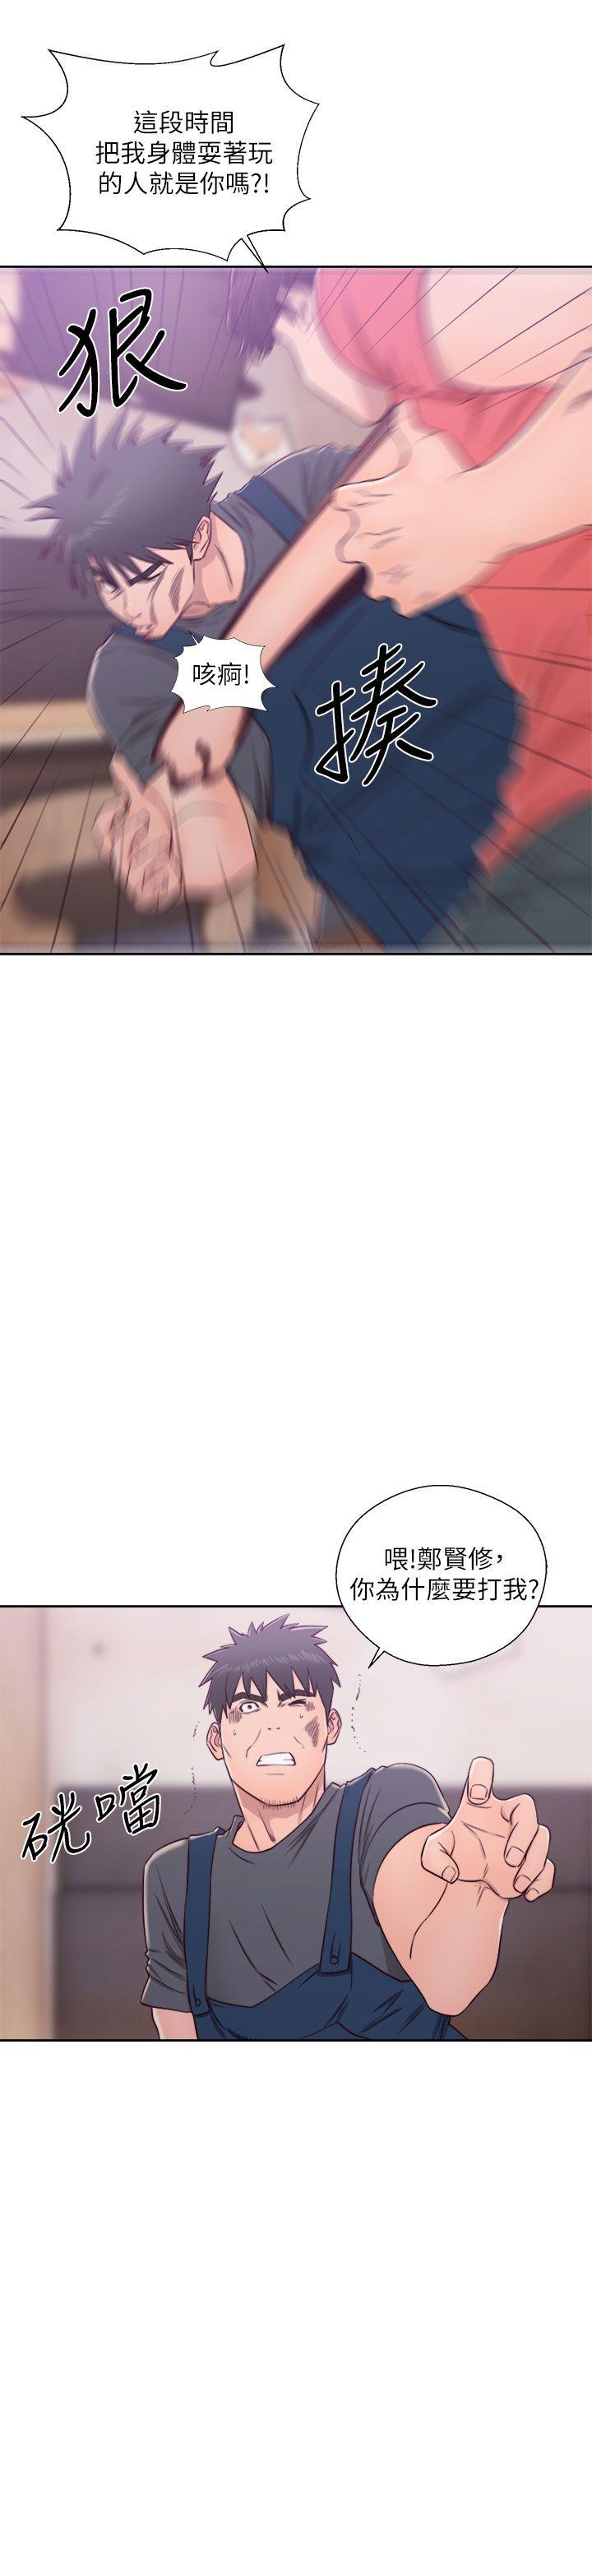 韩国污漫画 青春:逆齡小鮮肉 第29话 34